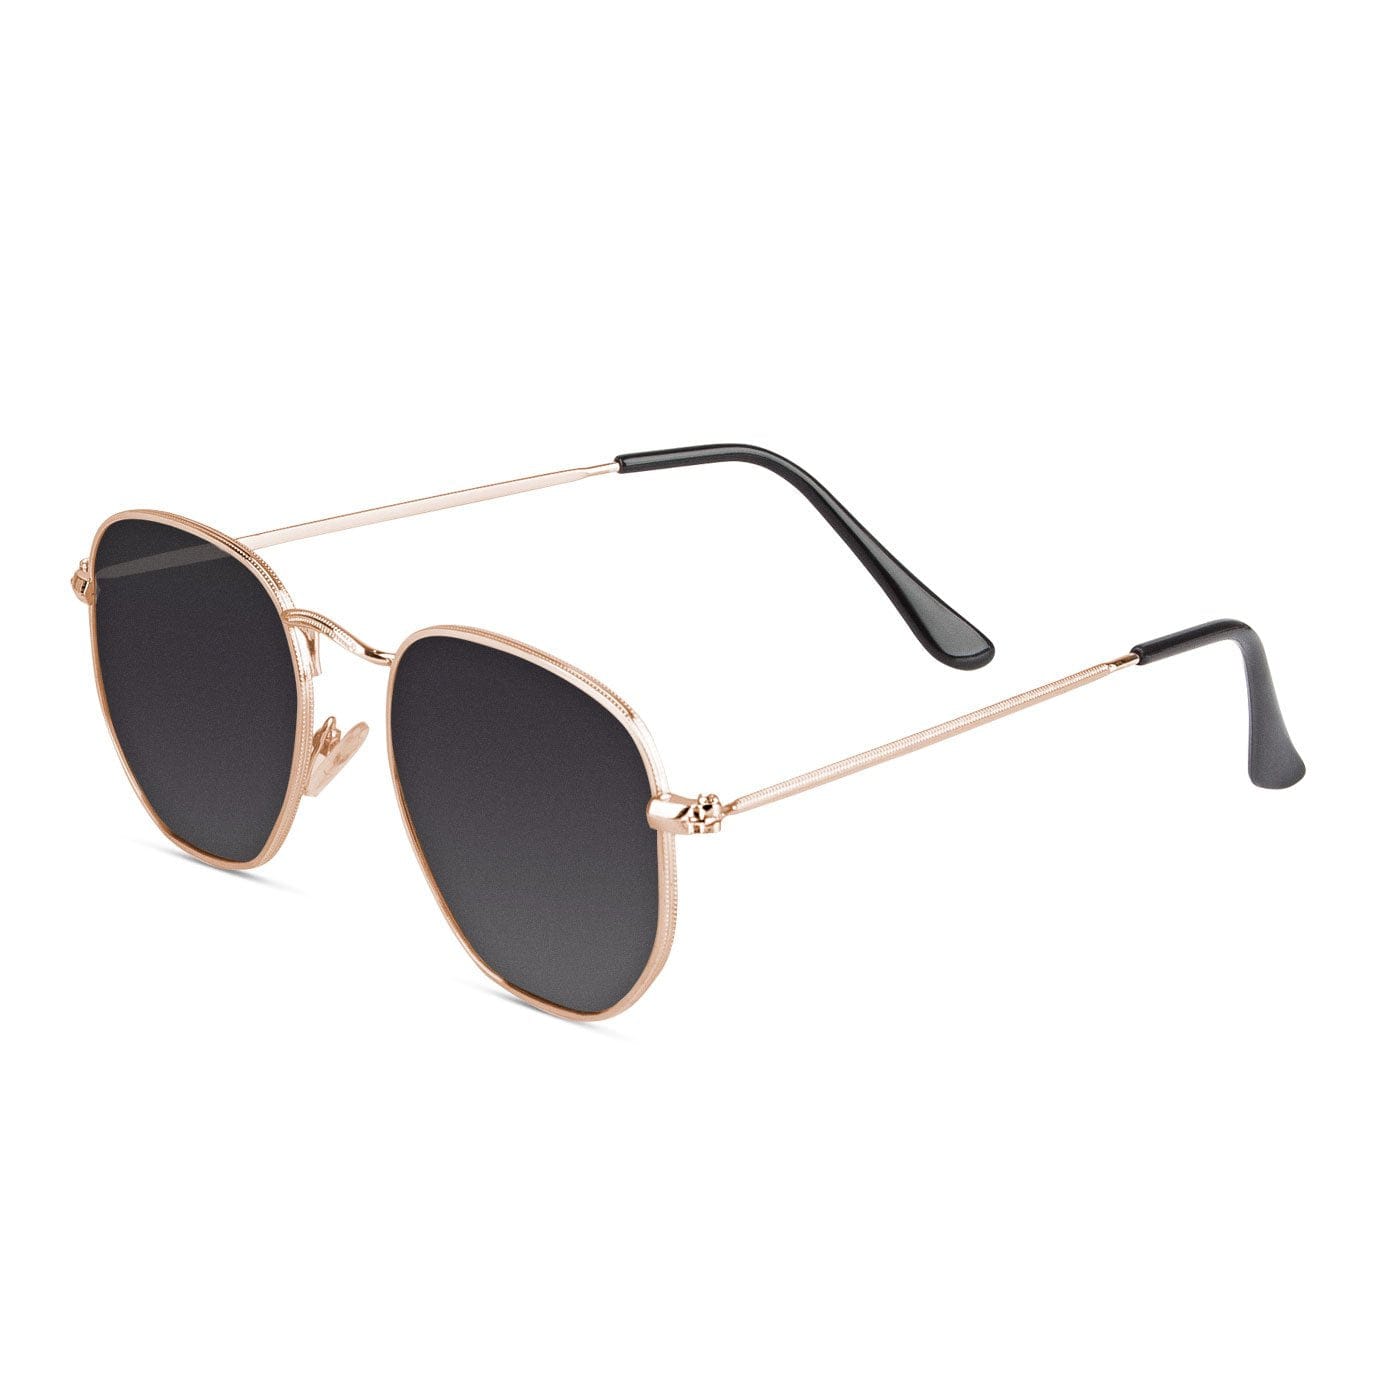 Samui Gold / Smoke Sunglasses